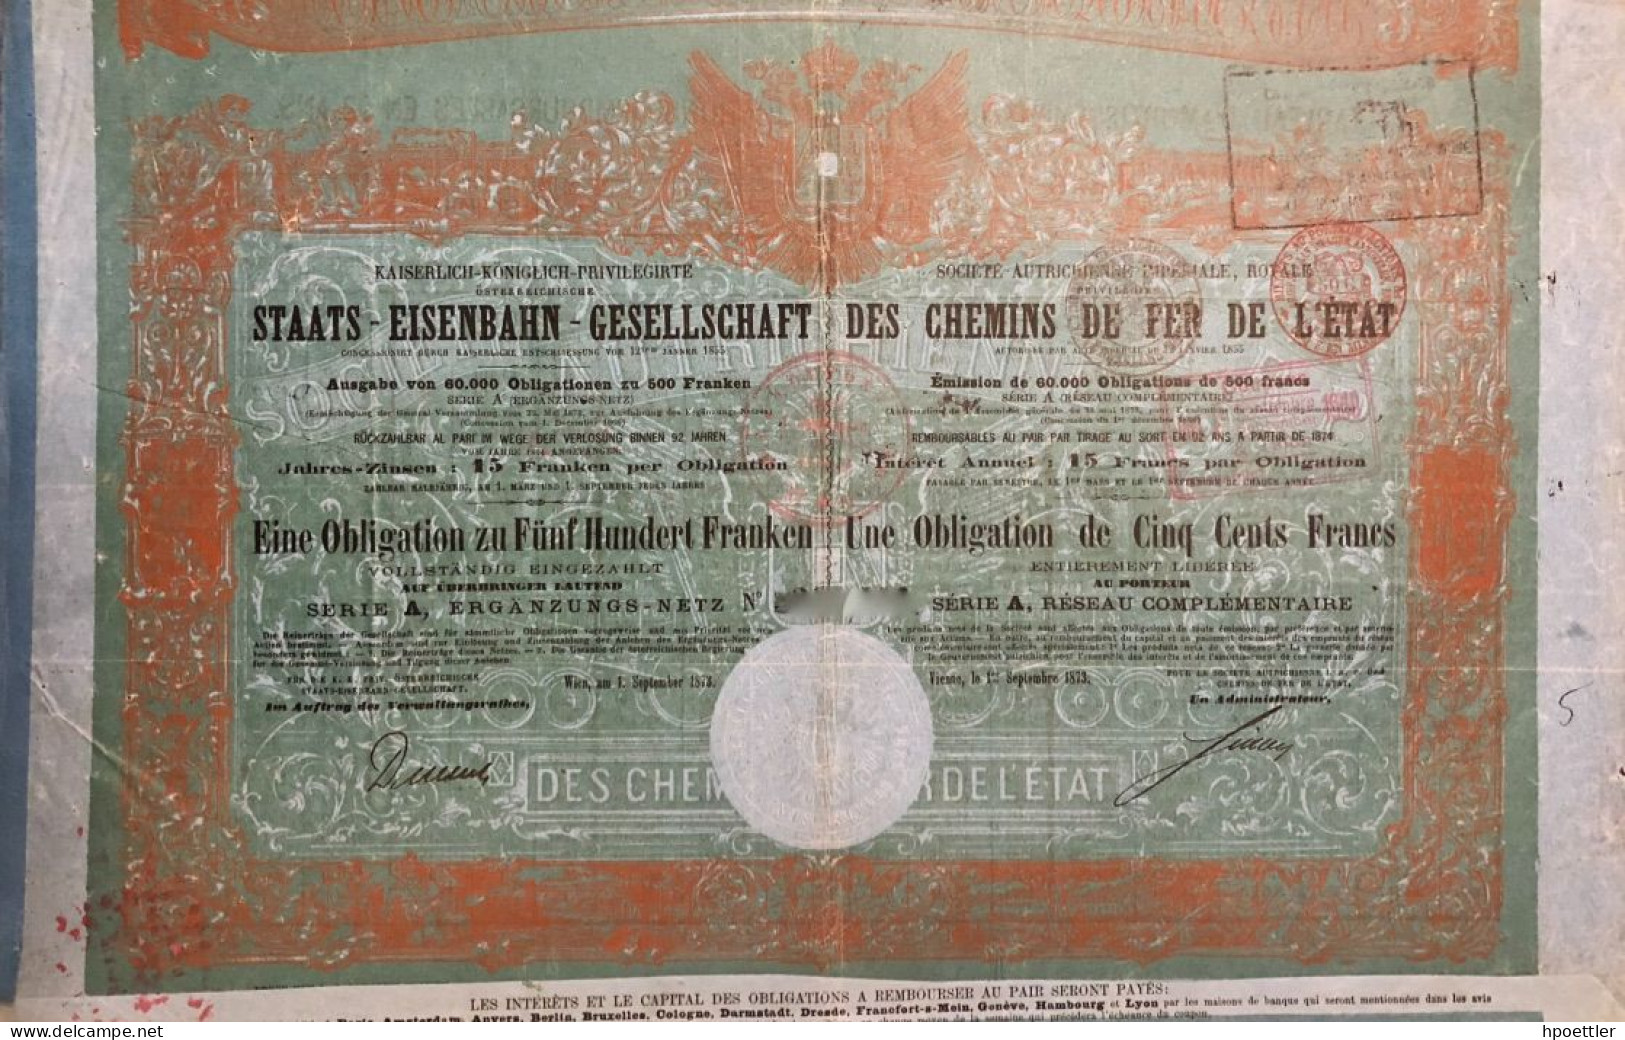 Vienne 1873: Societe Autrichienne Imperiale Royale, Privilegie Des Chemins De Fer De L'Etat - 500 Francs - Spoorwegen En Trams